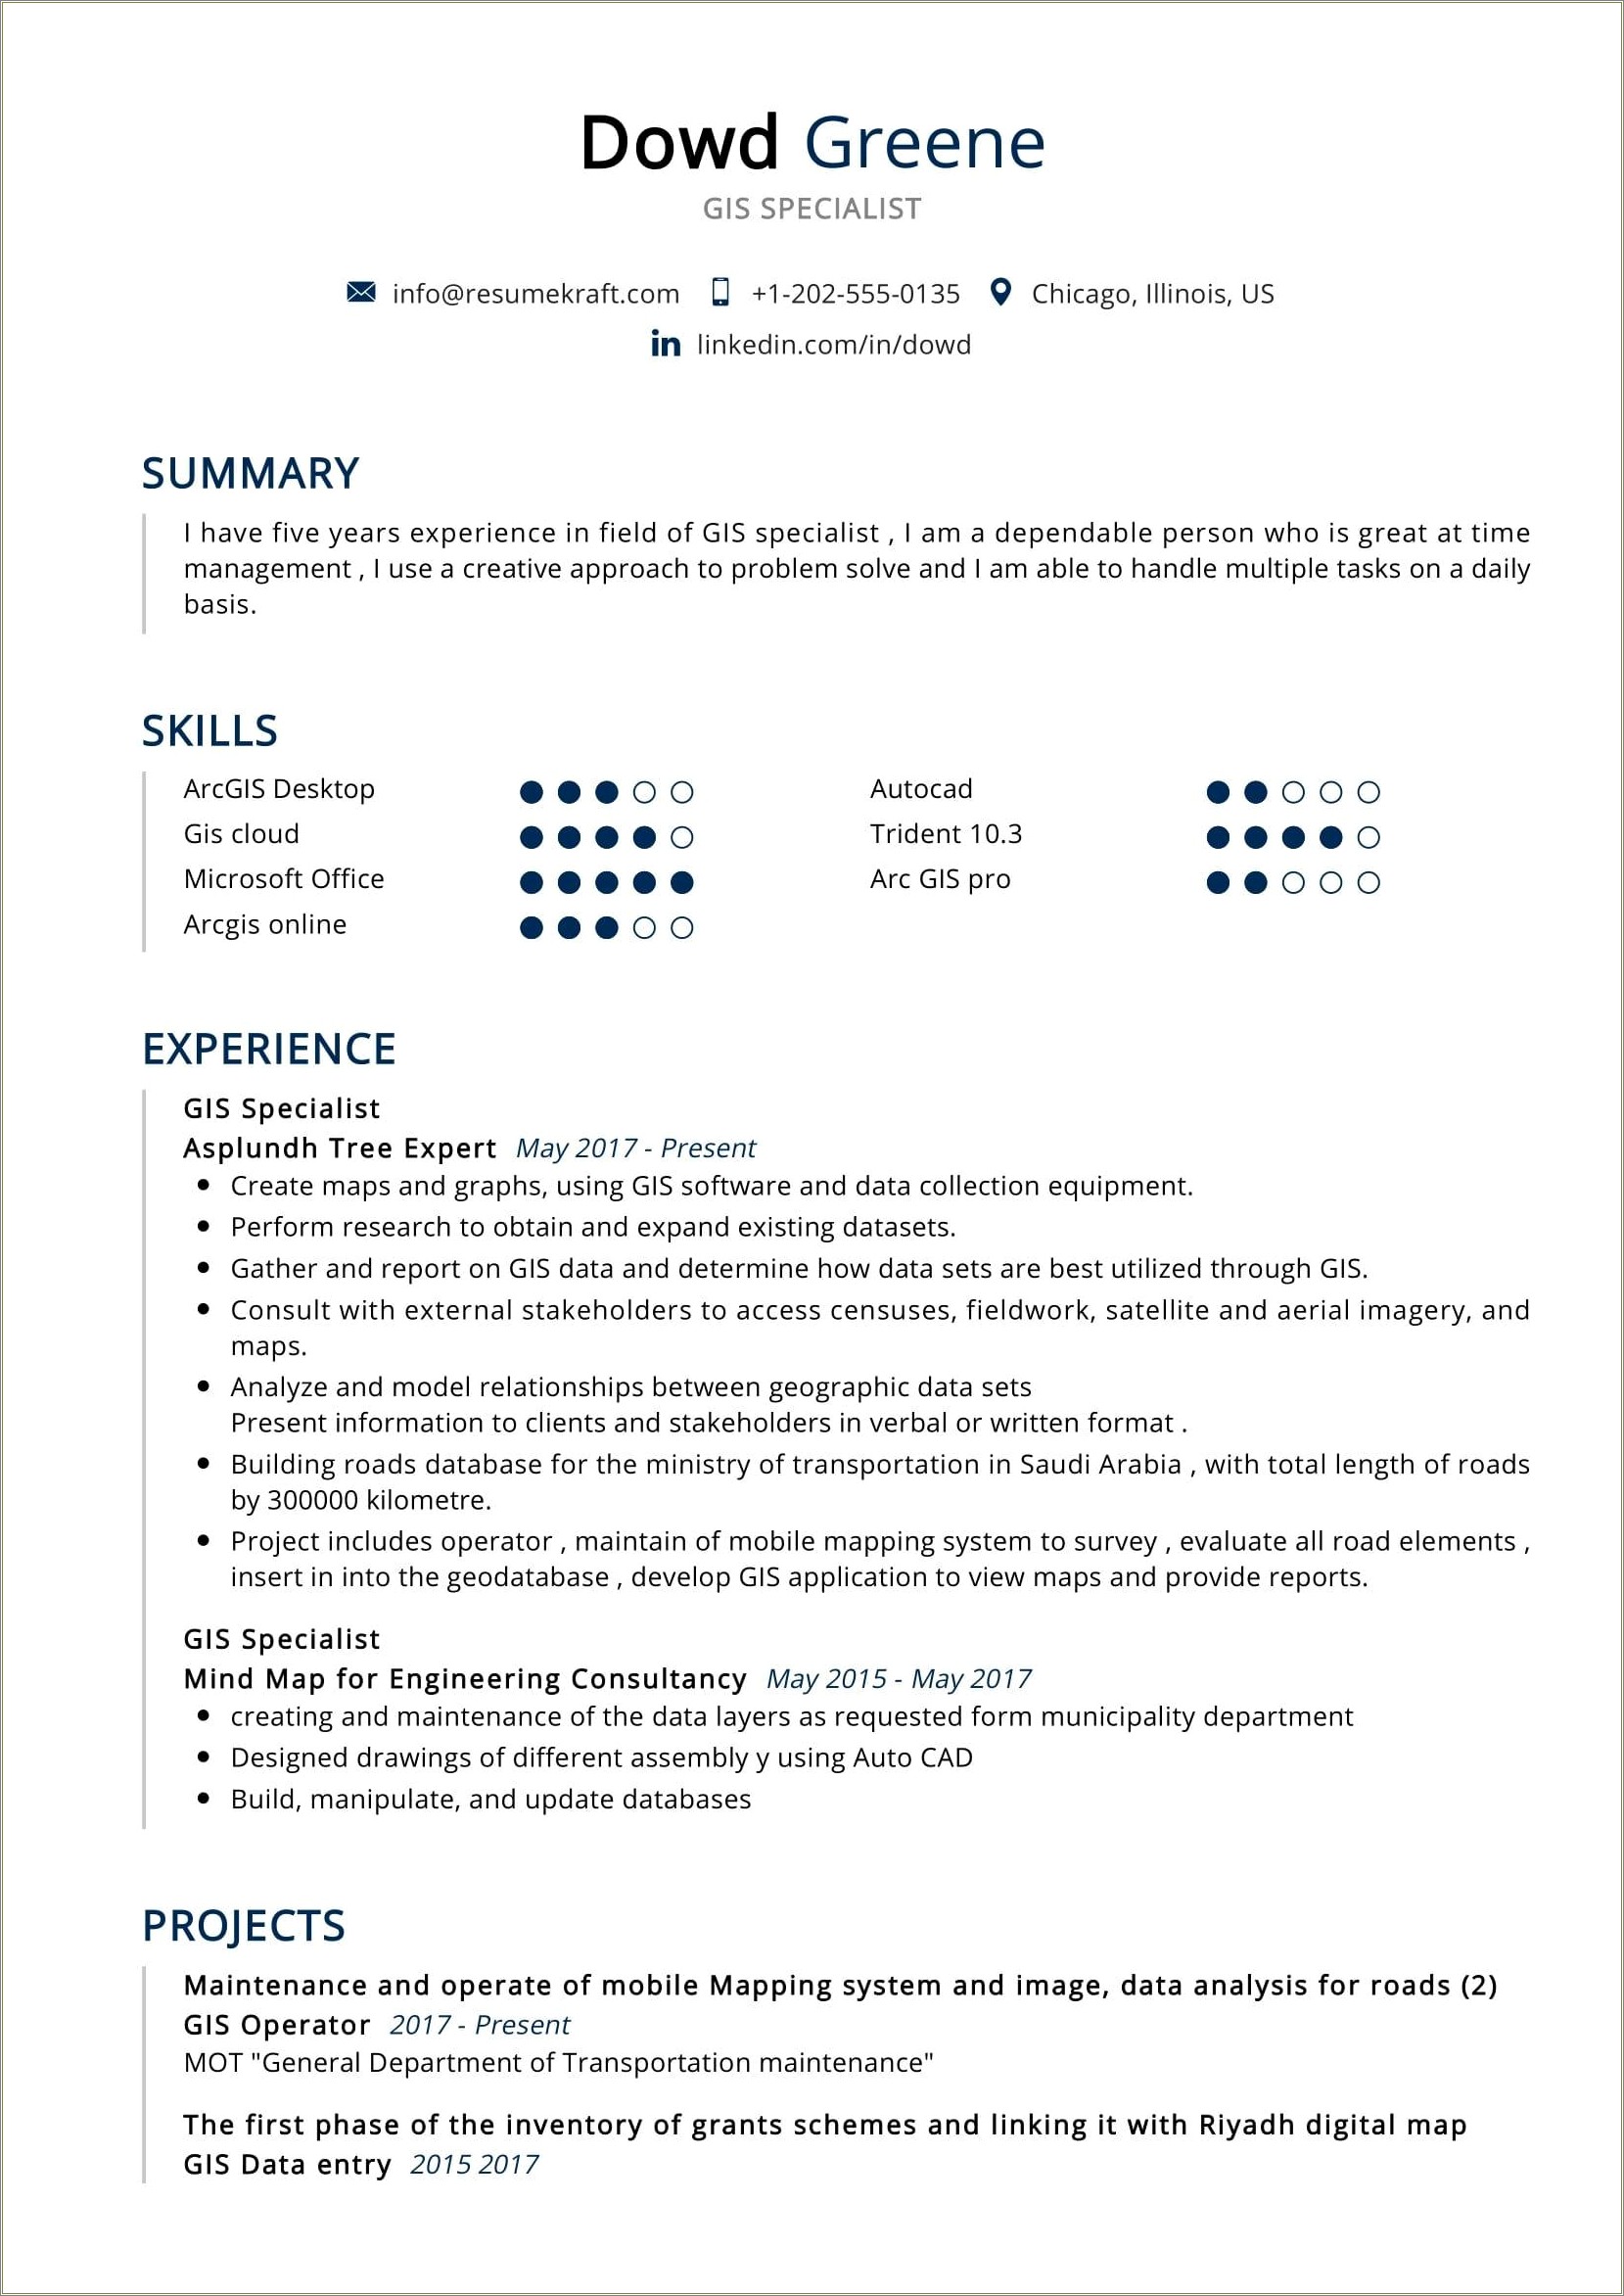 Automotive Assembler Job Description For Resume